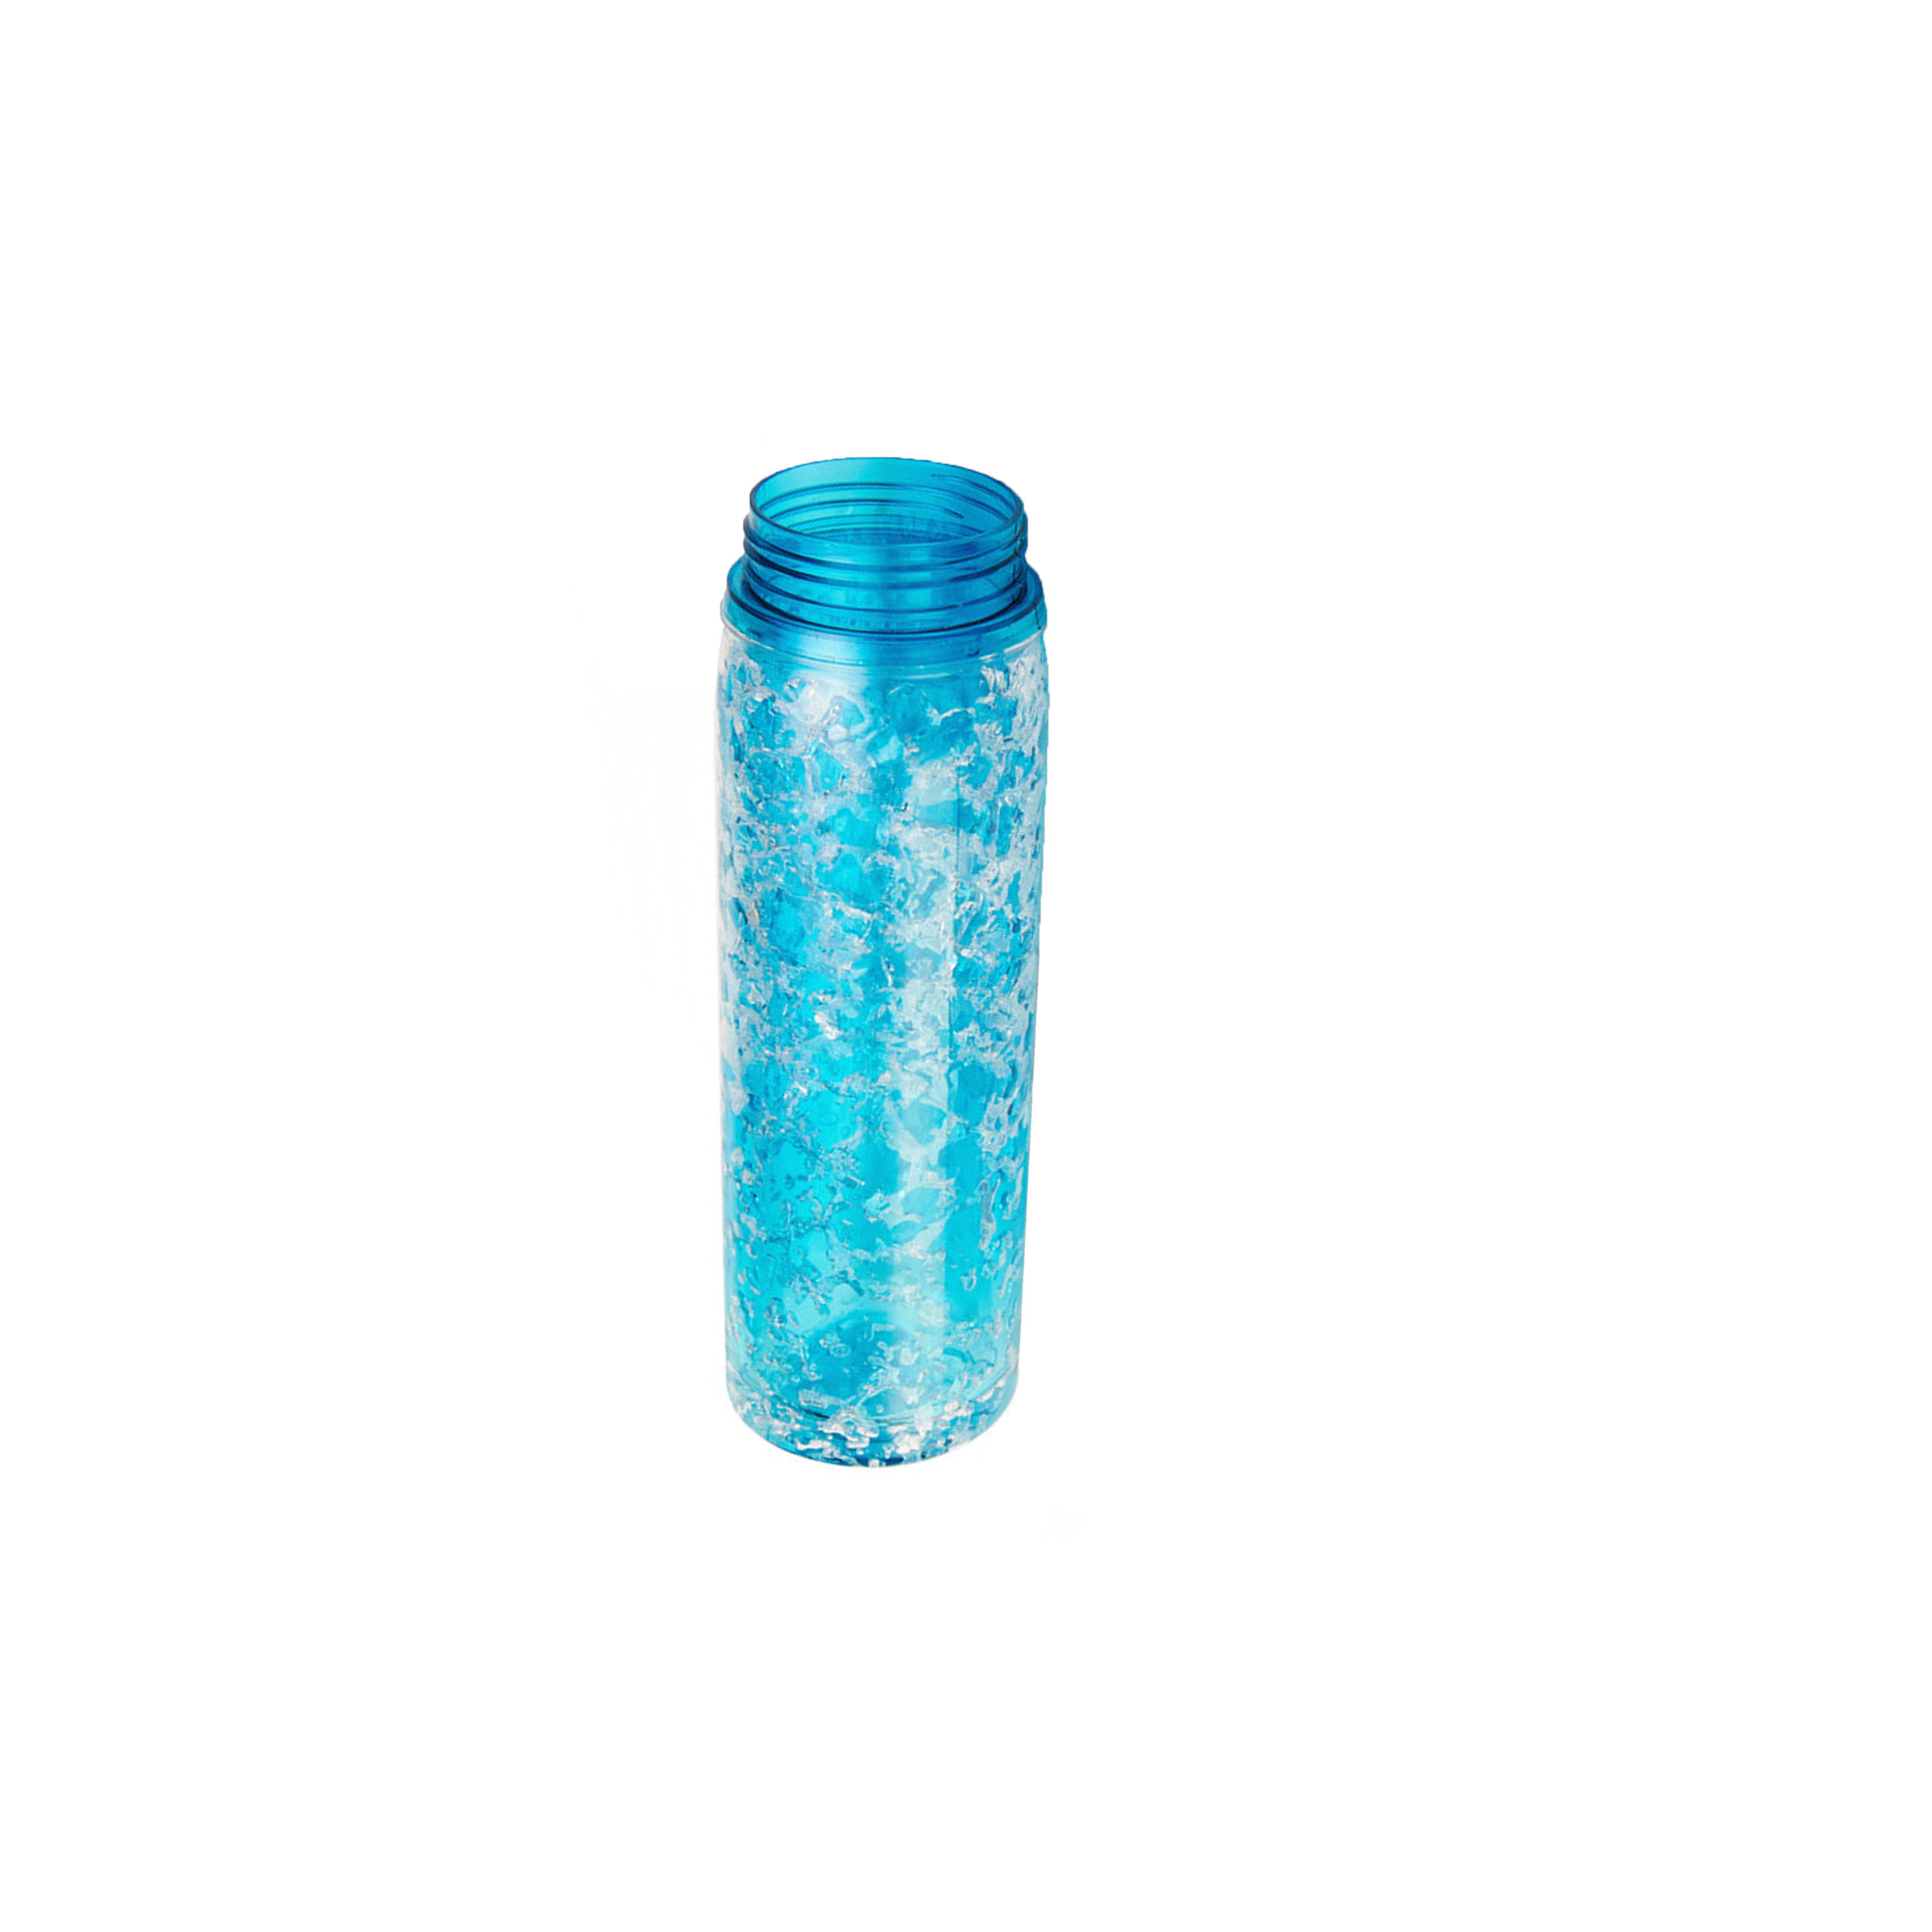 18oz Flask cheap water bottles，metal water bottles，water bottles in bulk –  Tumblerbulk